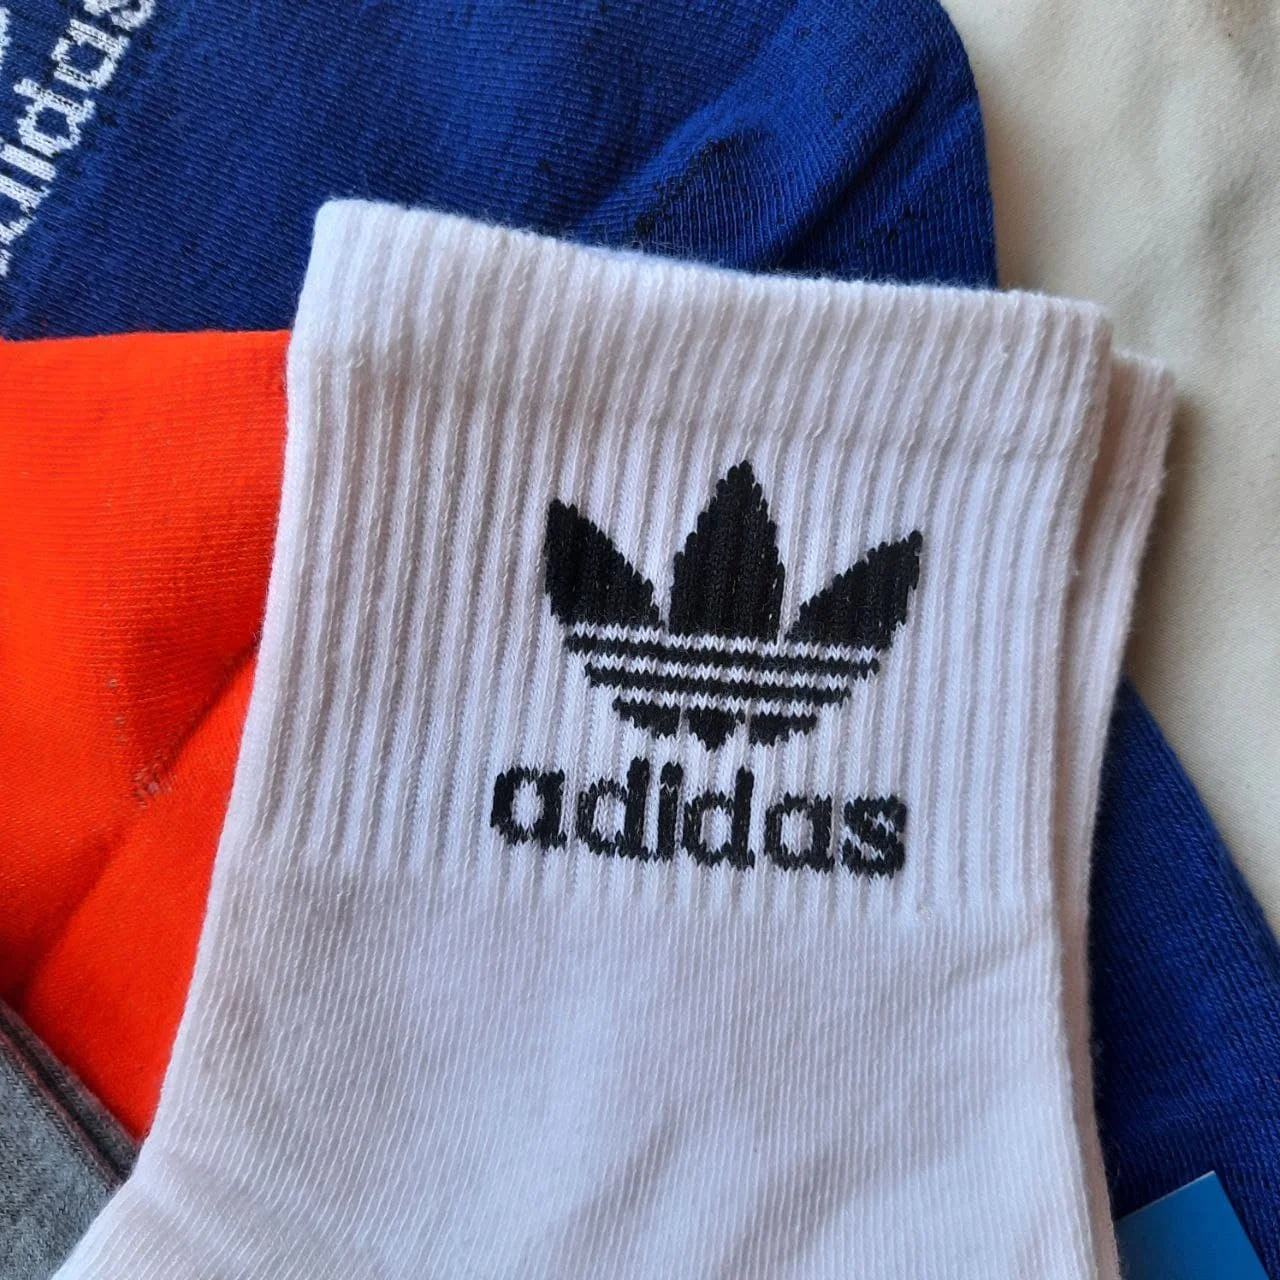 10 шт. (5 пар) мужские носки Adidas качественные подарочные носки.